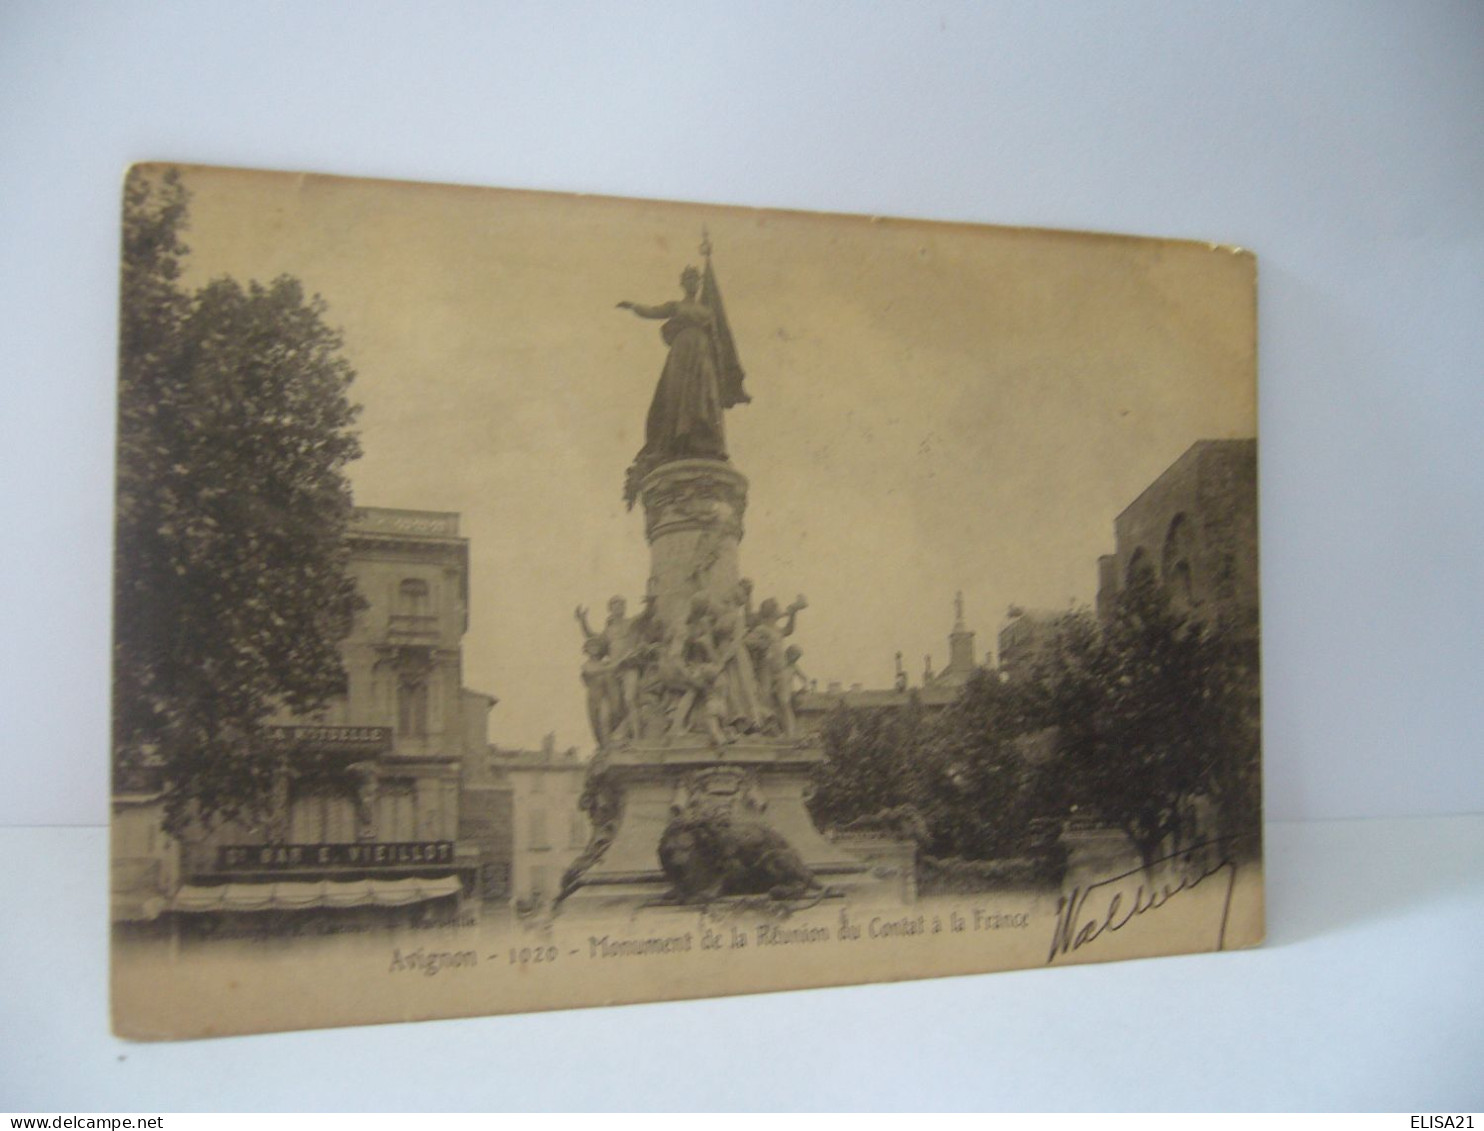 AVIGNON 84 VAUCLUSE MONUMENT DU CENTENAIRE DE LA REUNION DU COMTA A LA FRANCE CPA 1903 - Avignon